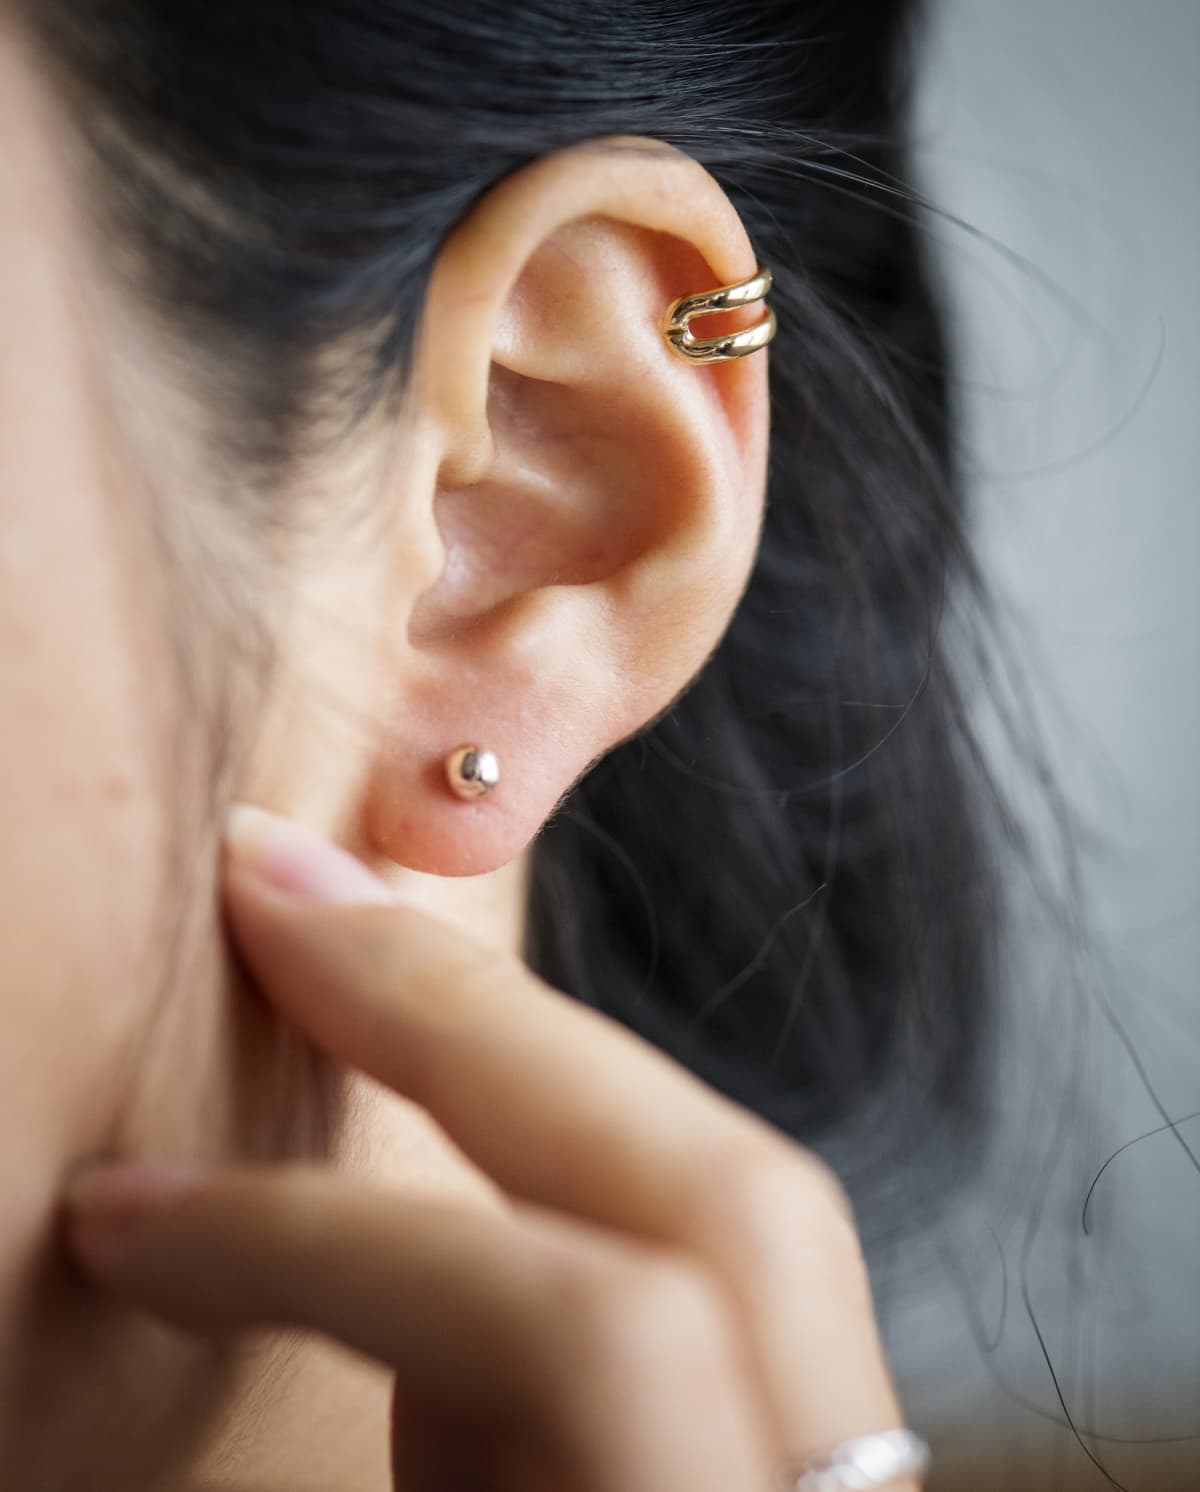 Ear Piercings and body jewelry.